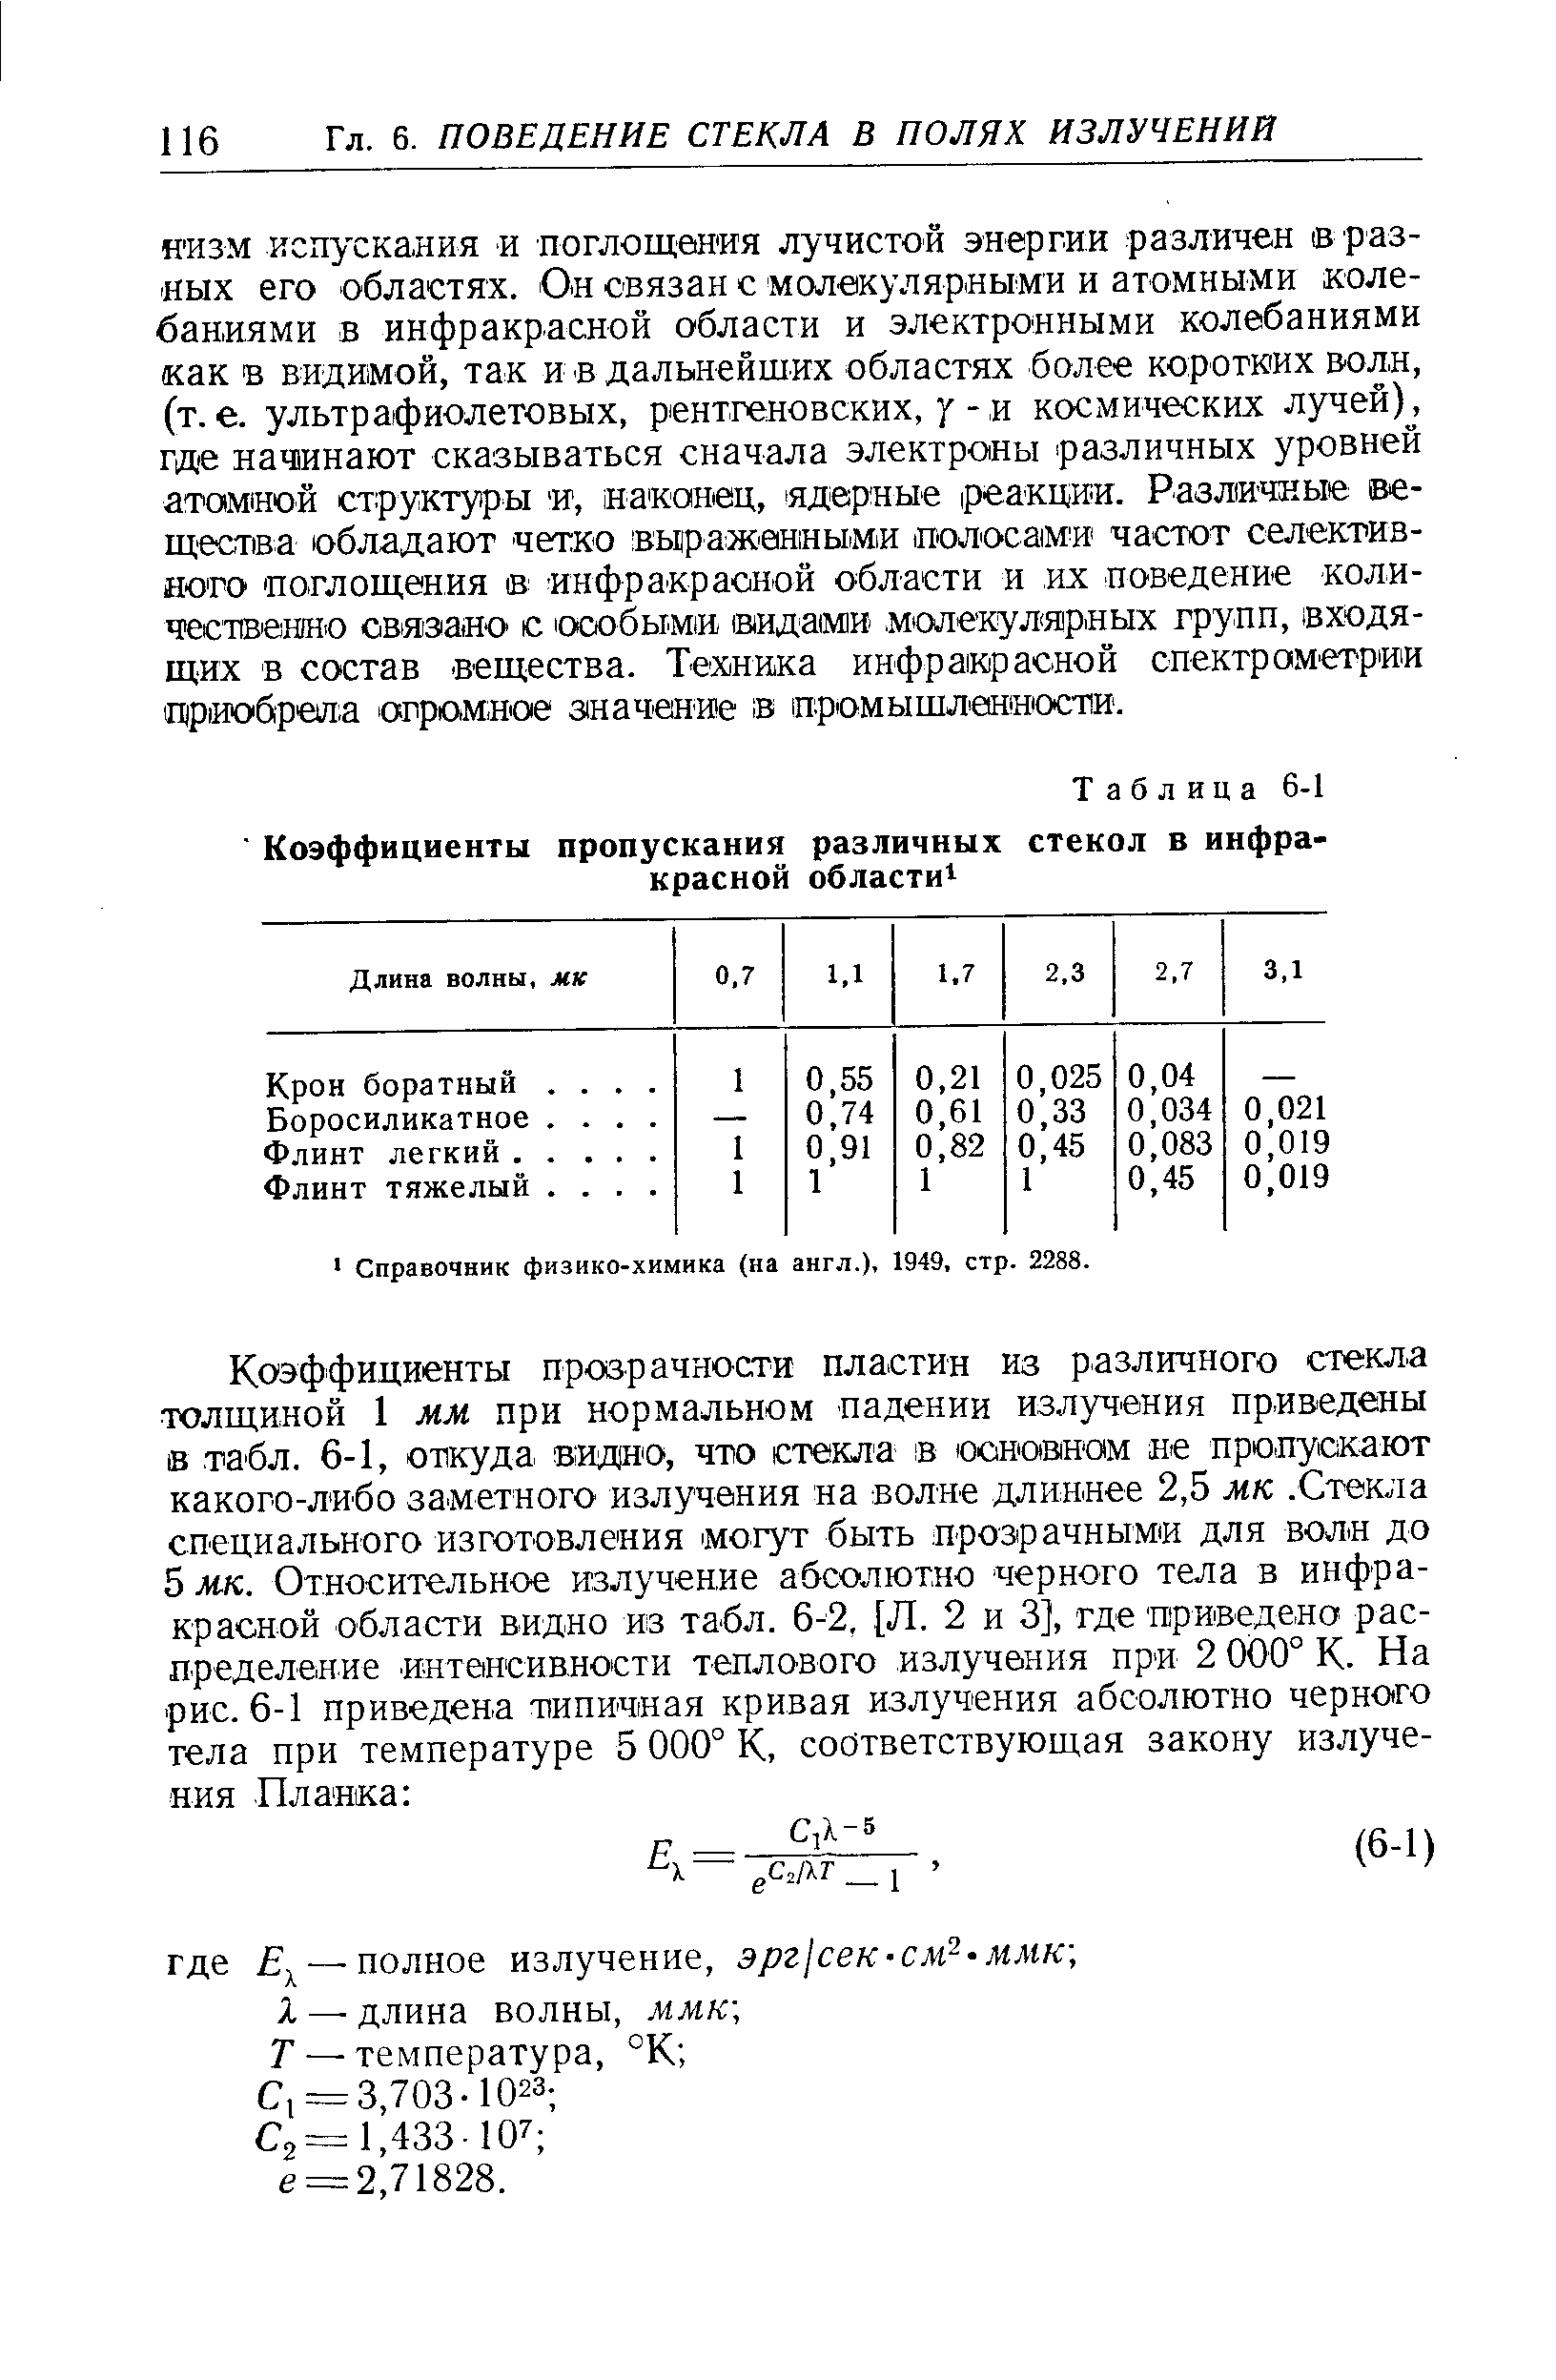 Справочник физико-химика (на англ.) 1949, стр, 2288.
